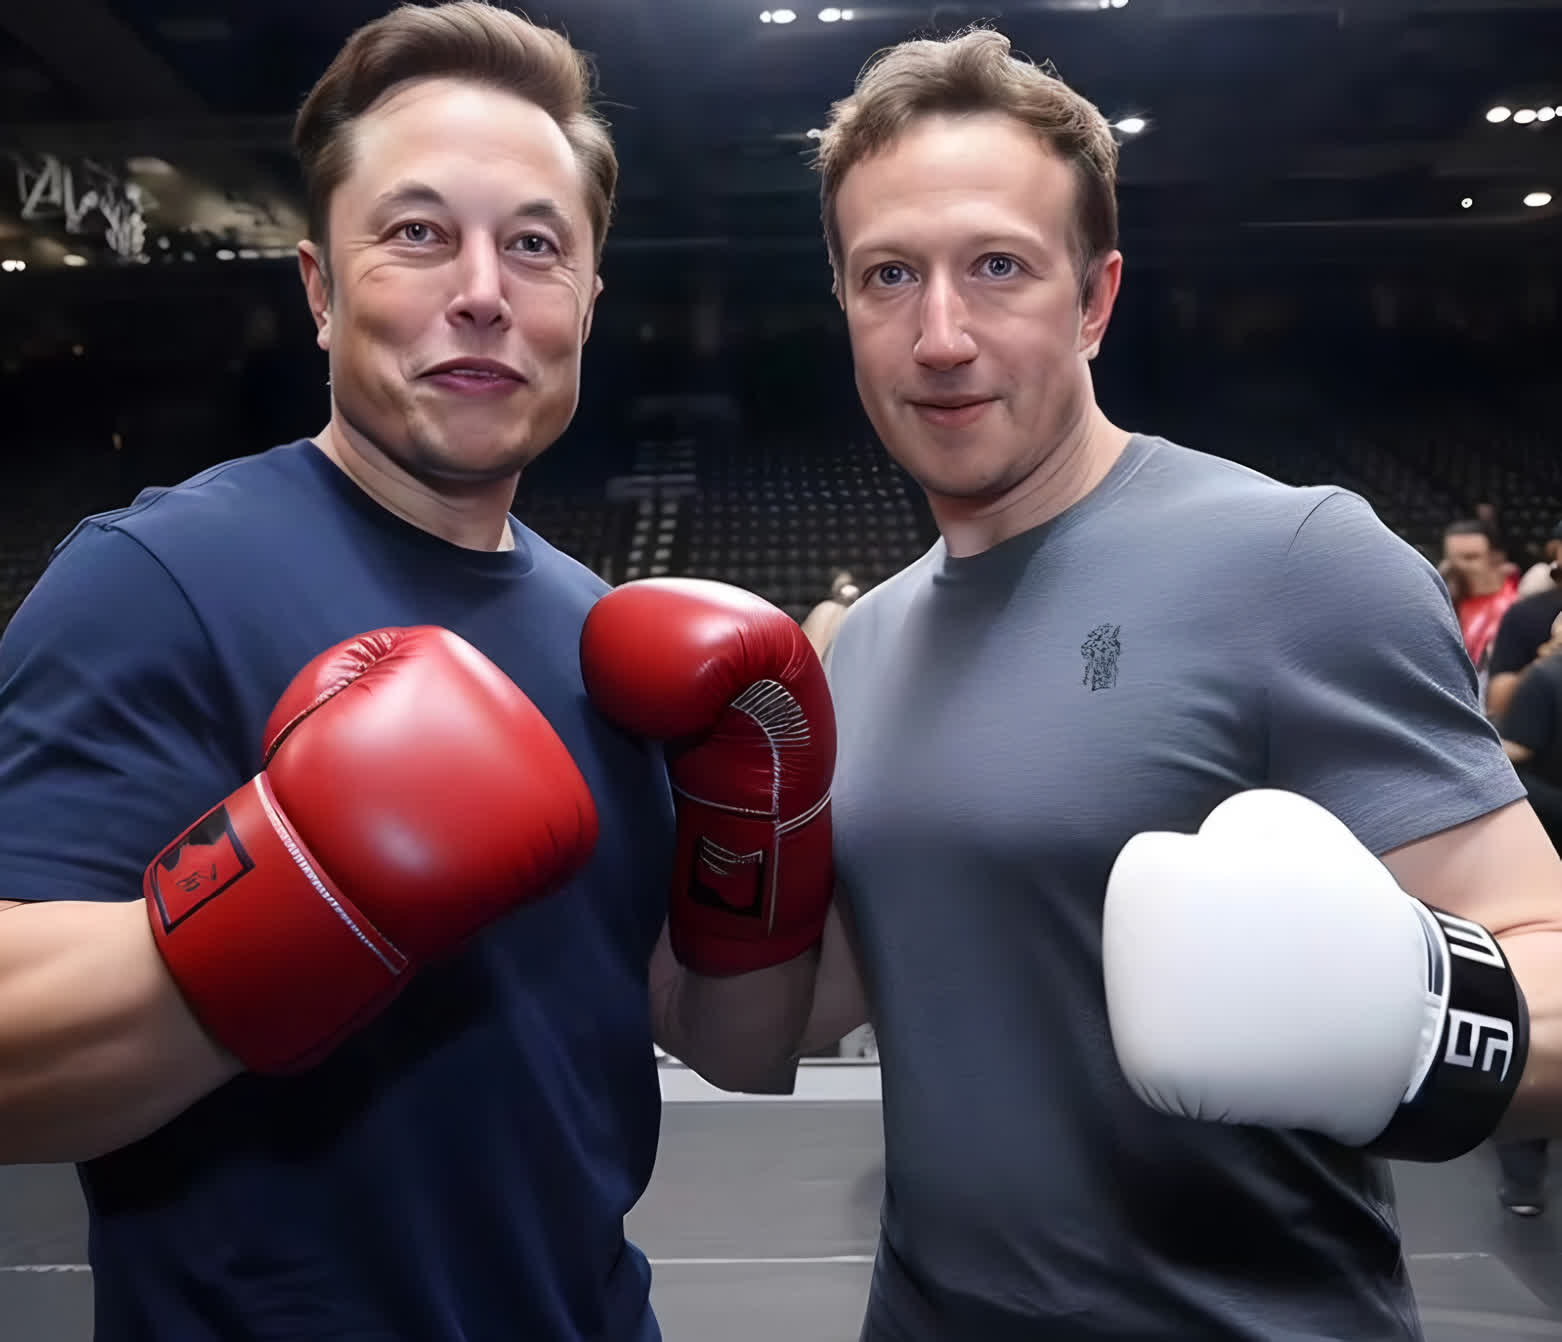 Detalles de la pelea entre Elon Musk y Mark Zuckerberg - ColorMusic